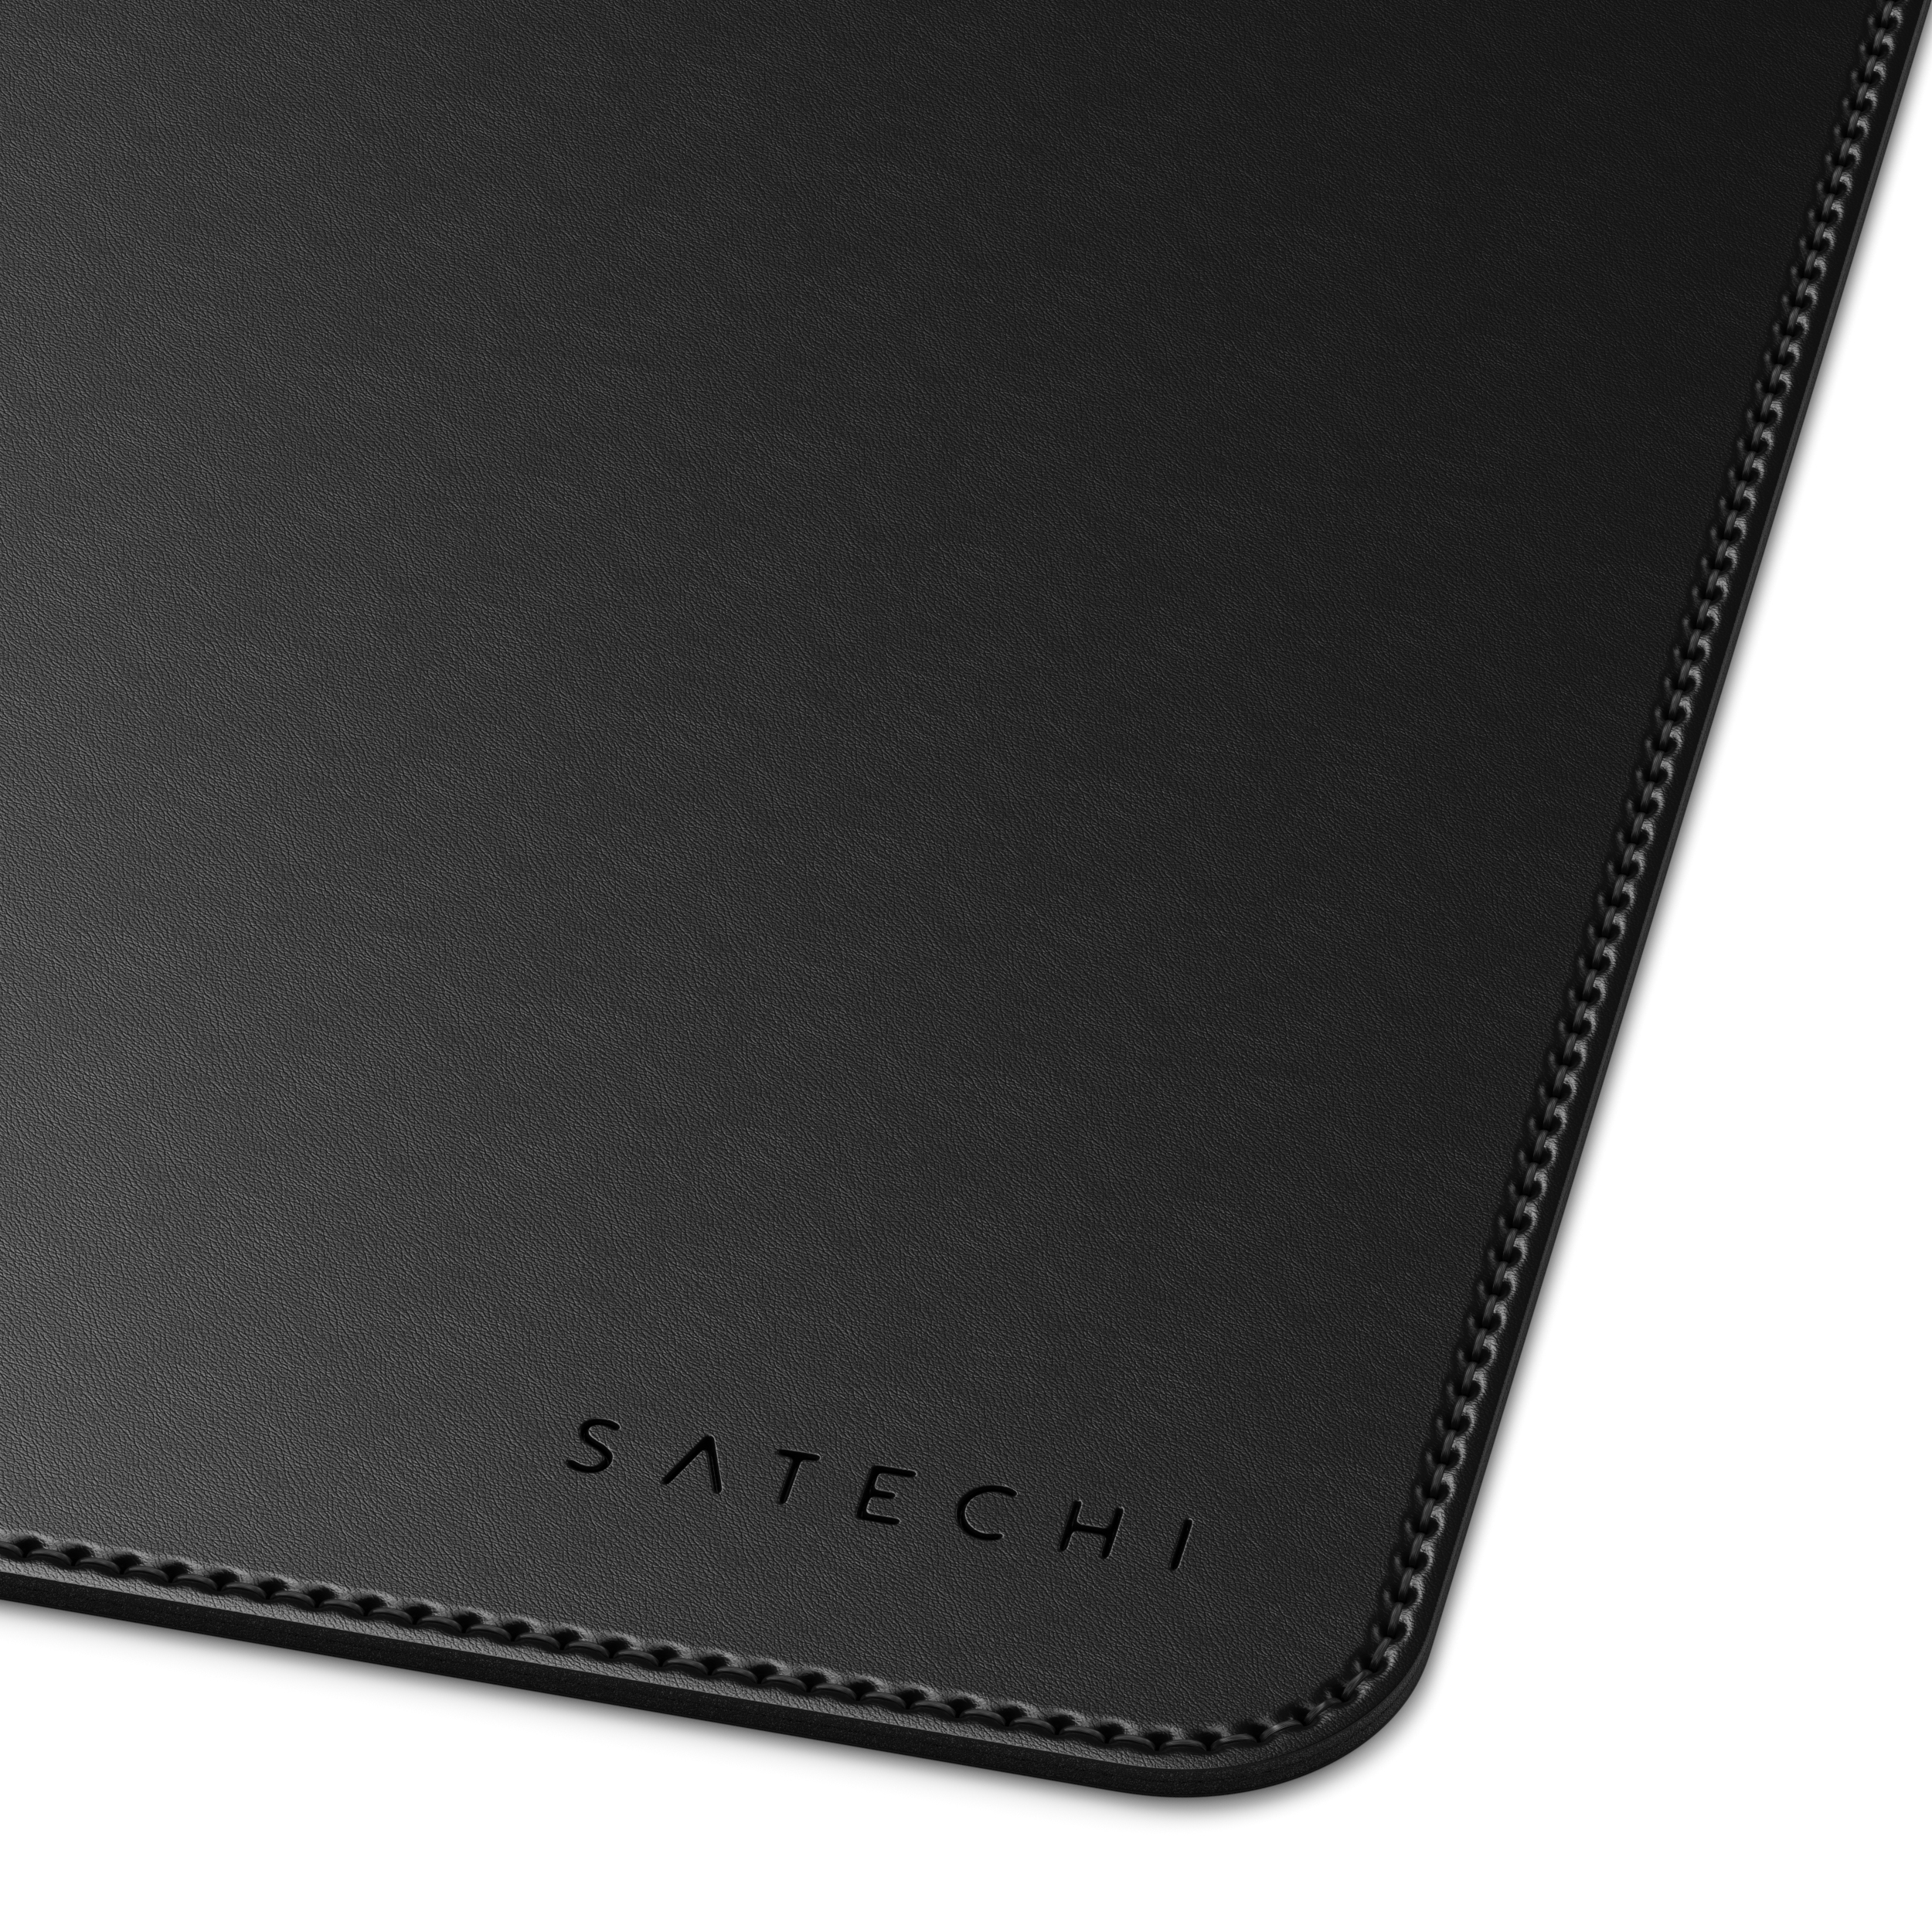 SATECHI Eco-Leather Deskmate - Black (31 58,42 Mousepad cm) x cm